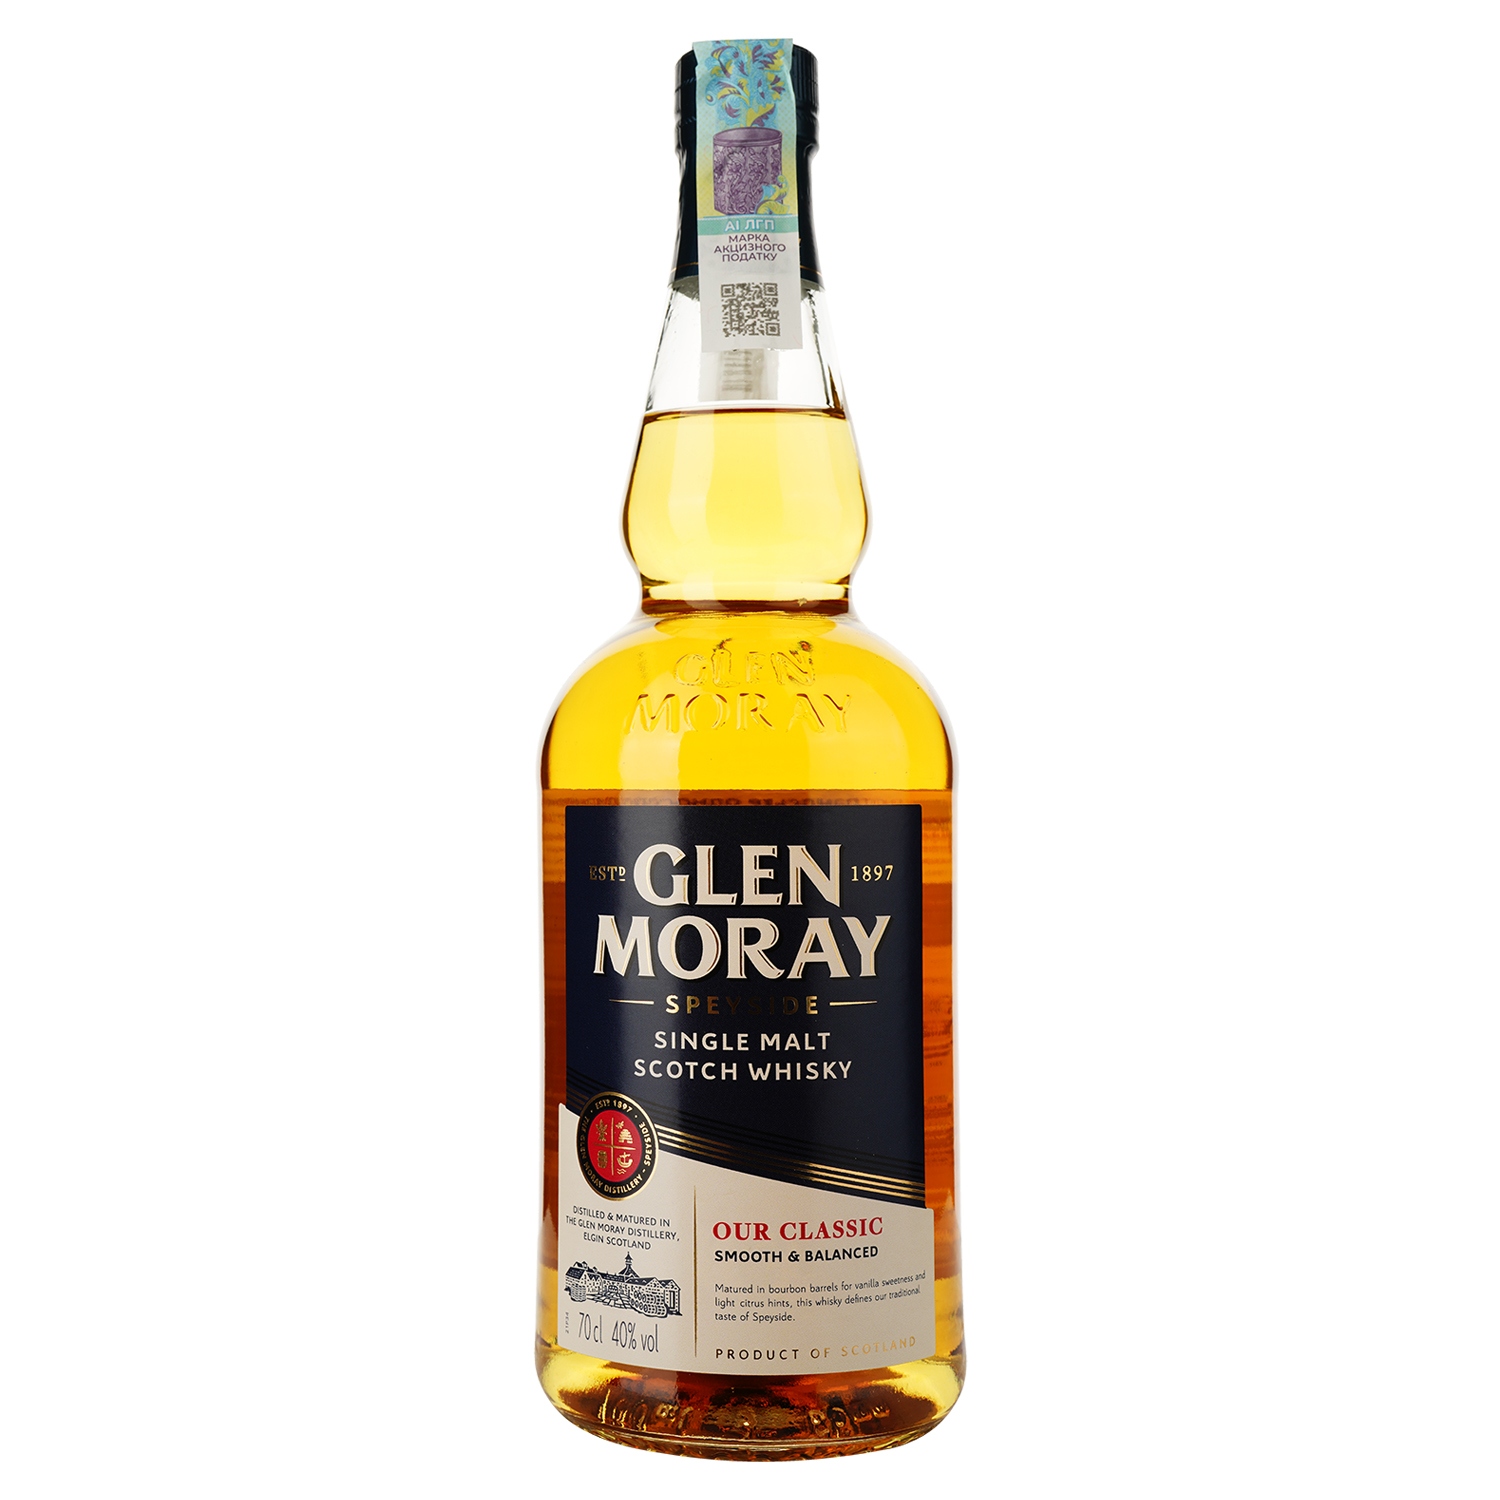 Віскі Glen Moray Classic Single Malt Scotch Whisky, в подарунковій упаковці, 40%, 0,7 л (739150) - фото 2